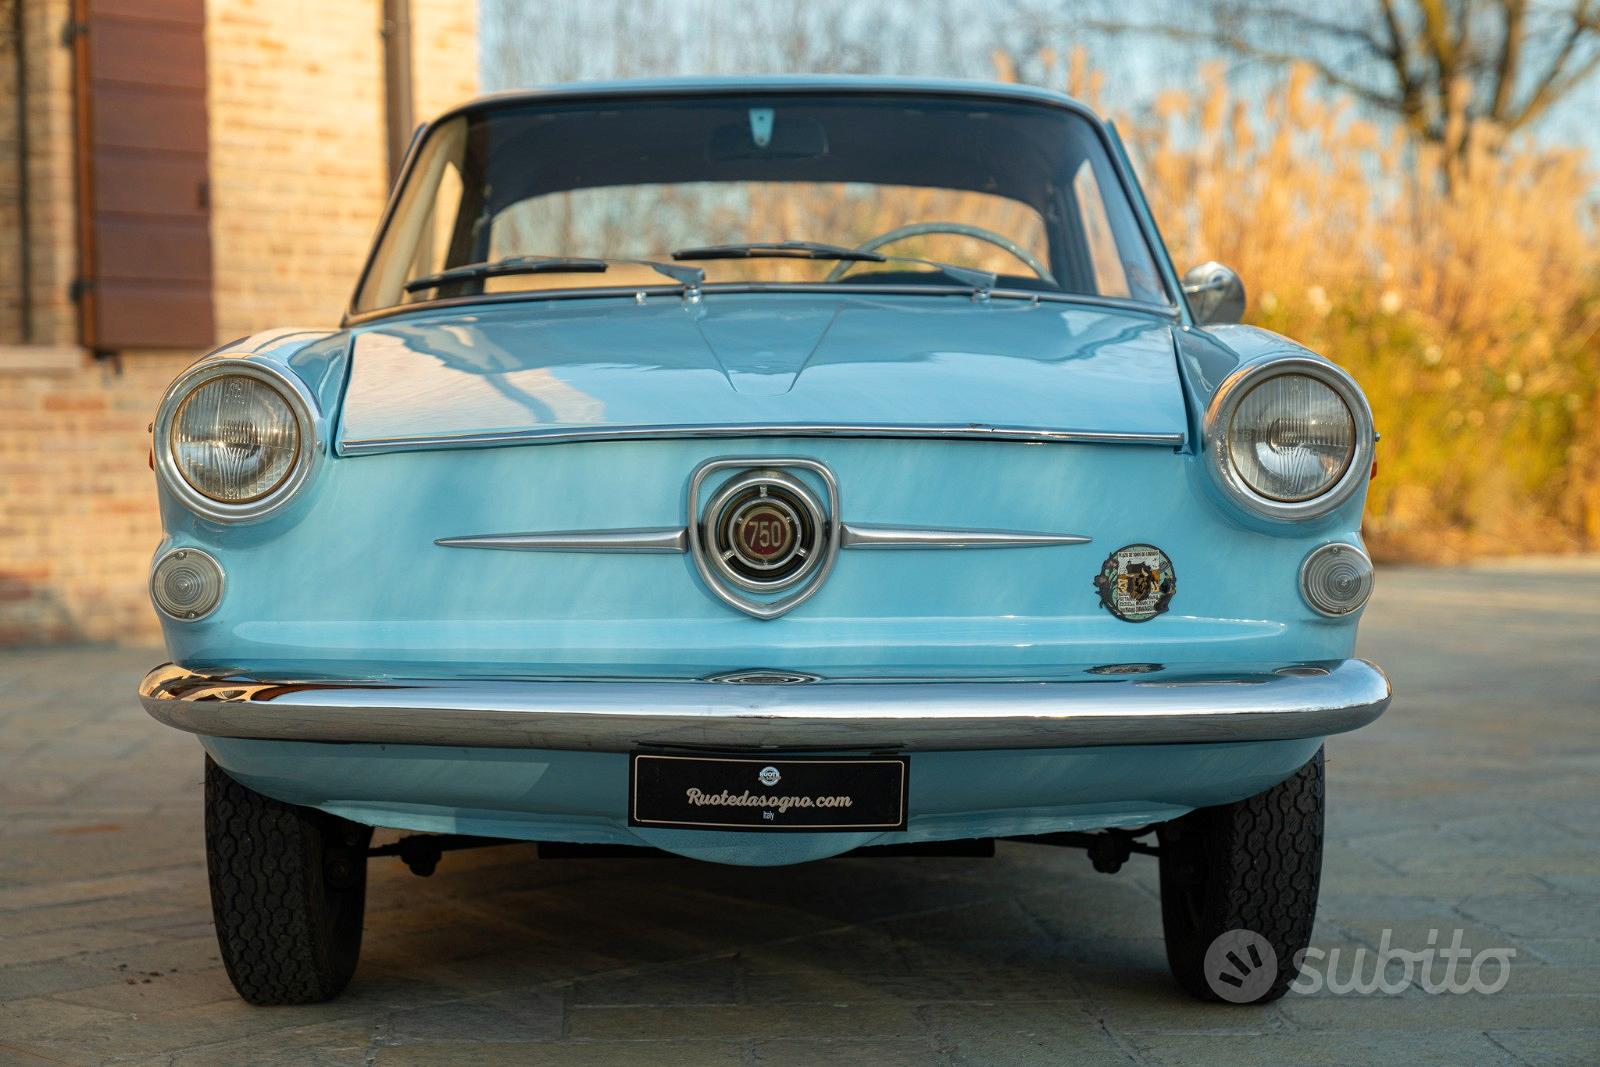 Subito - RUOTE DA SOGNO SRL - FIAT Altro modello - 1962 - Auto In vendita a  Reggio Emilia